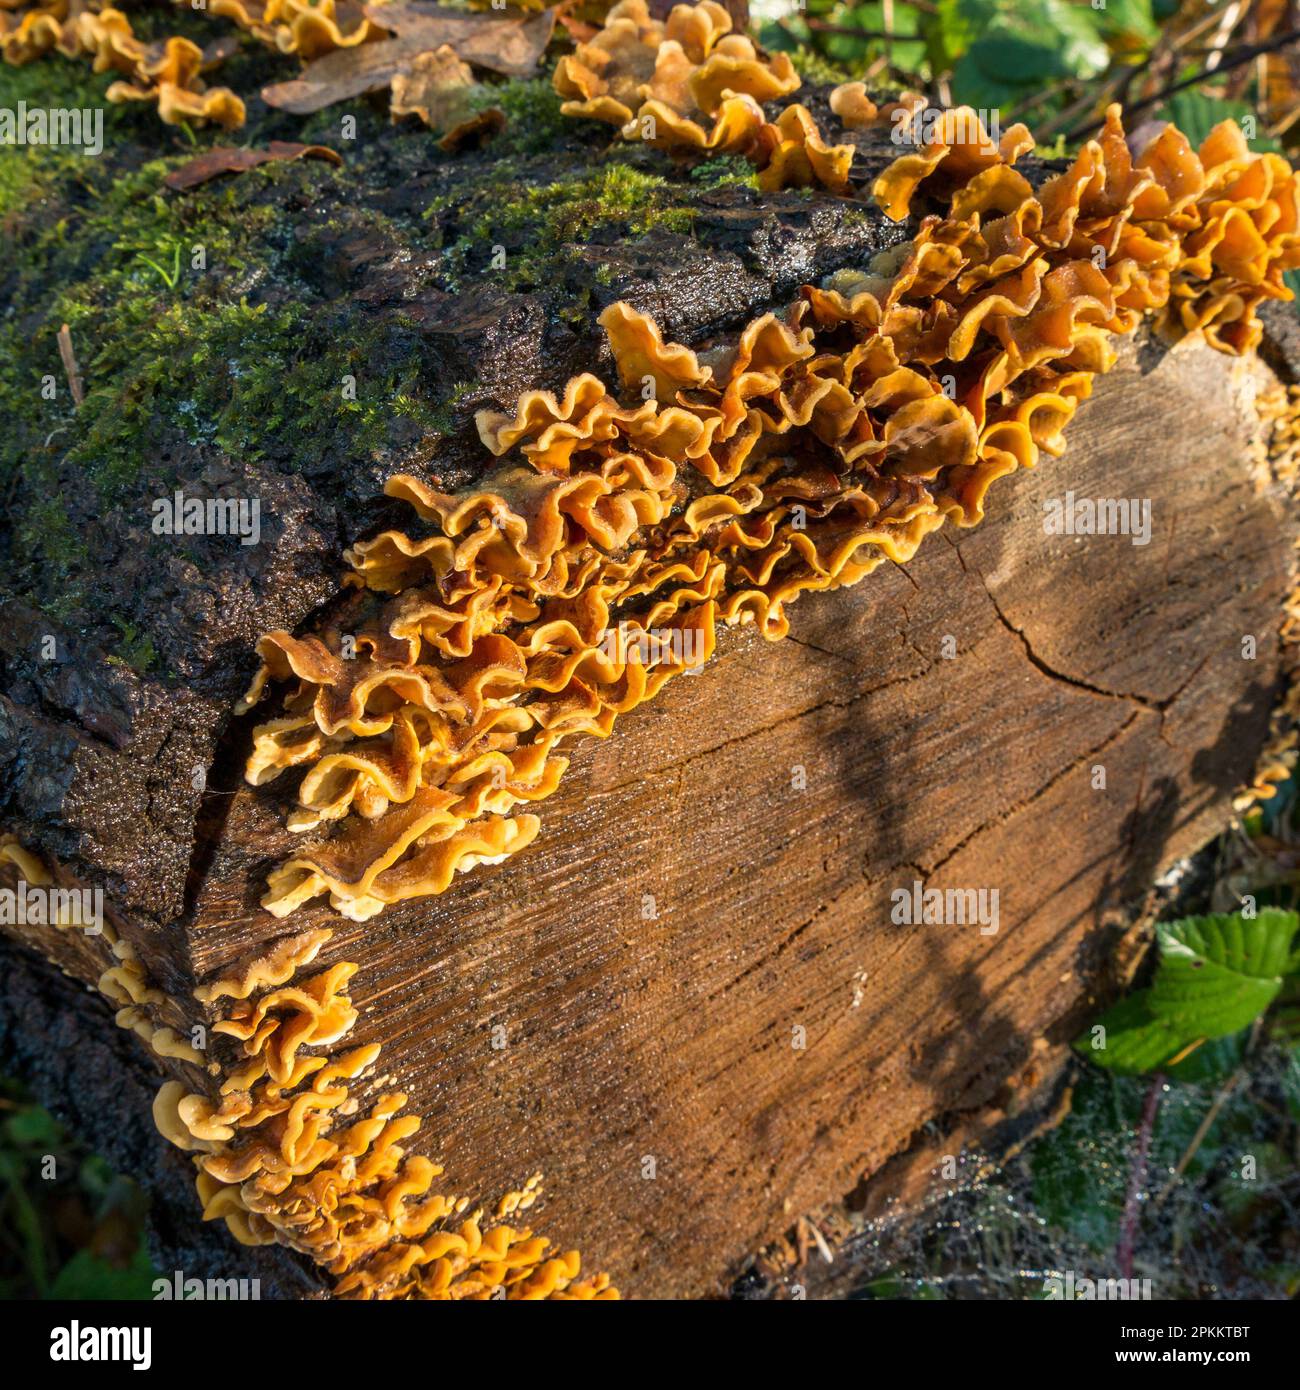 Crosta di cortina pelosa (Stereum hirsutum) fungo della staffa che cresce sul tronco morto dell'albero, Cumbria, Inghilterra, Regno Unito Foto Stock